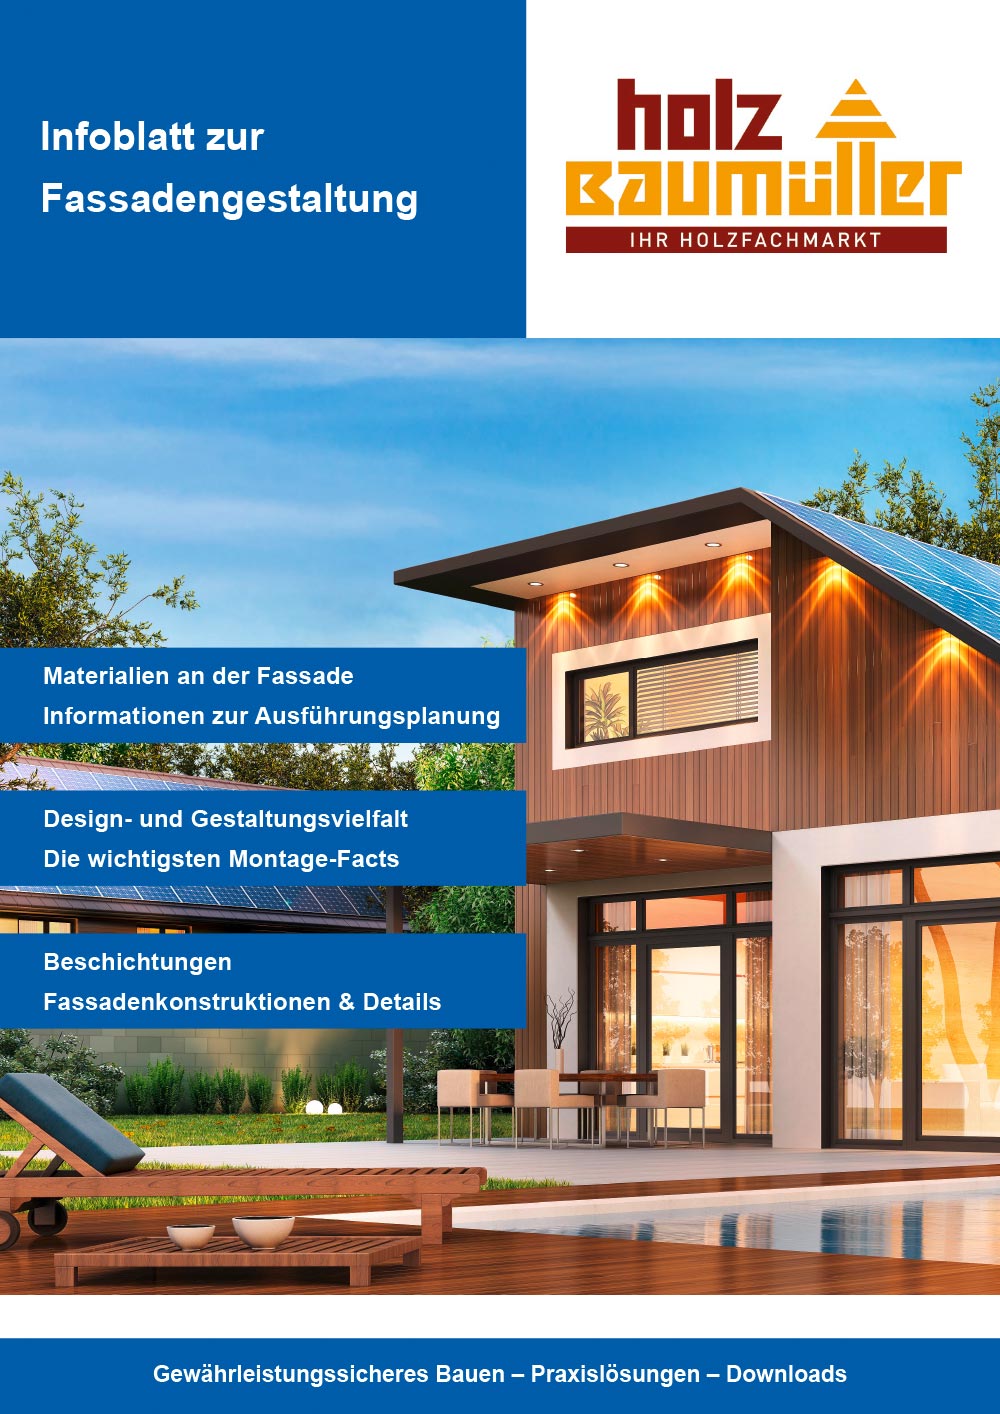 Titel zum Infoblatt für Fassadengestaltung von Holz Baumüller